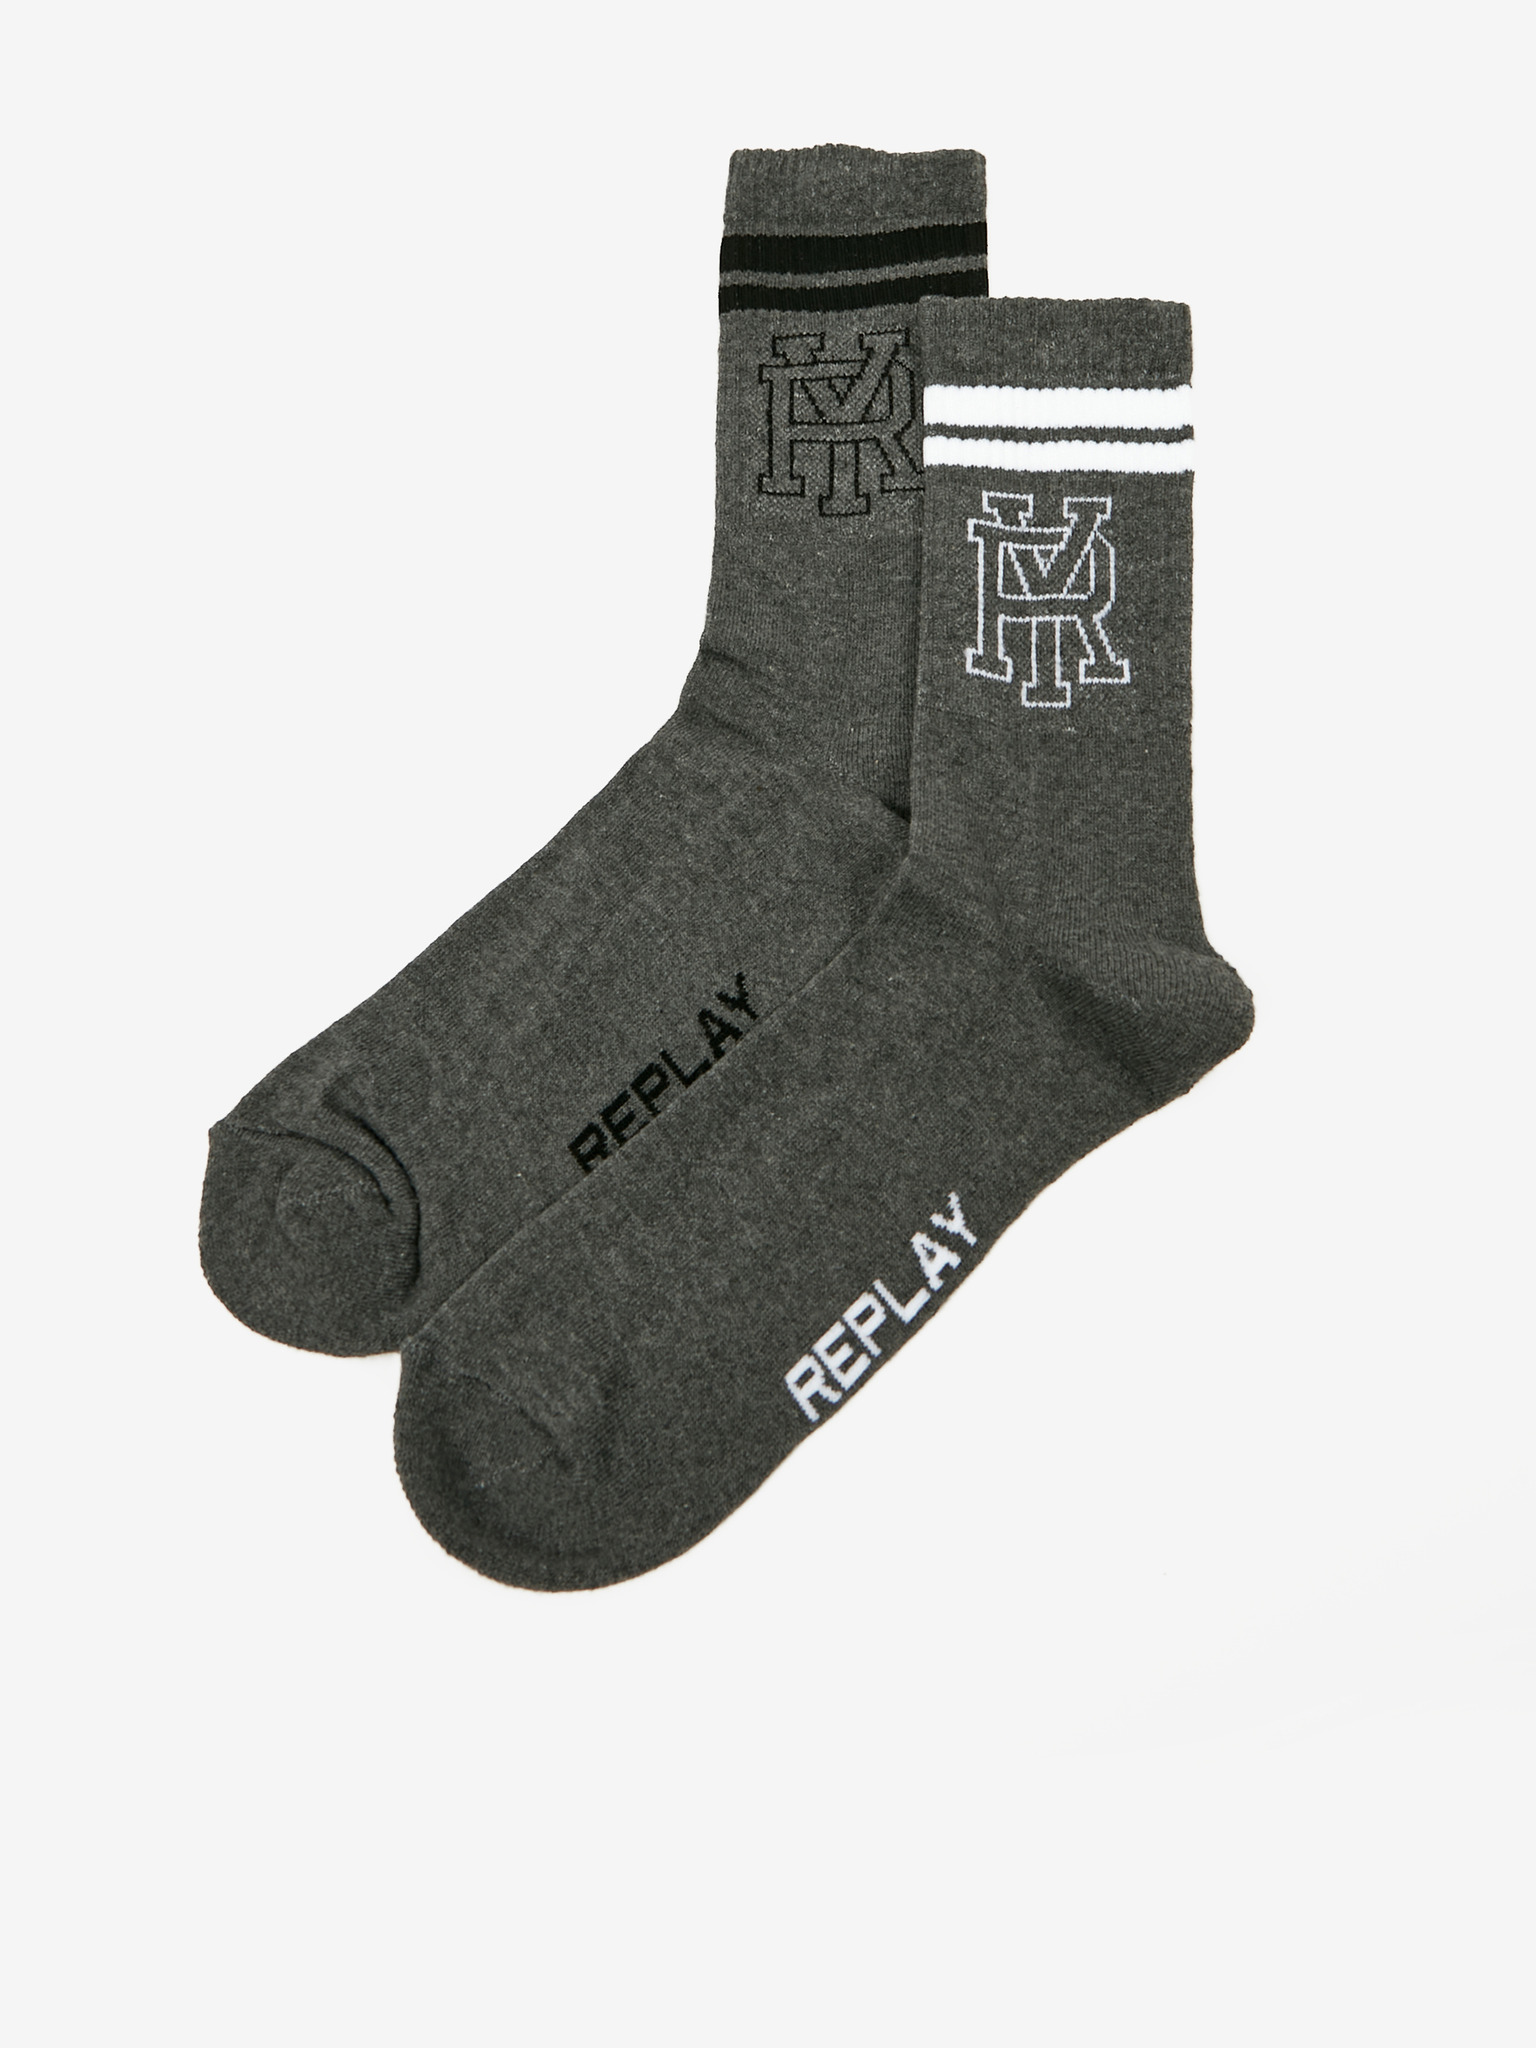 Ponožky 2 páry Replay